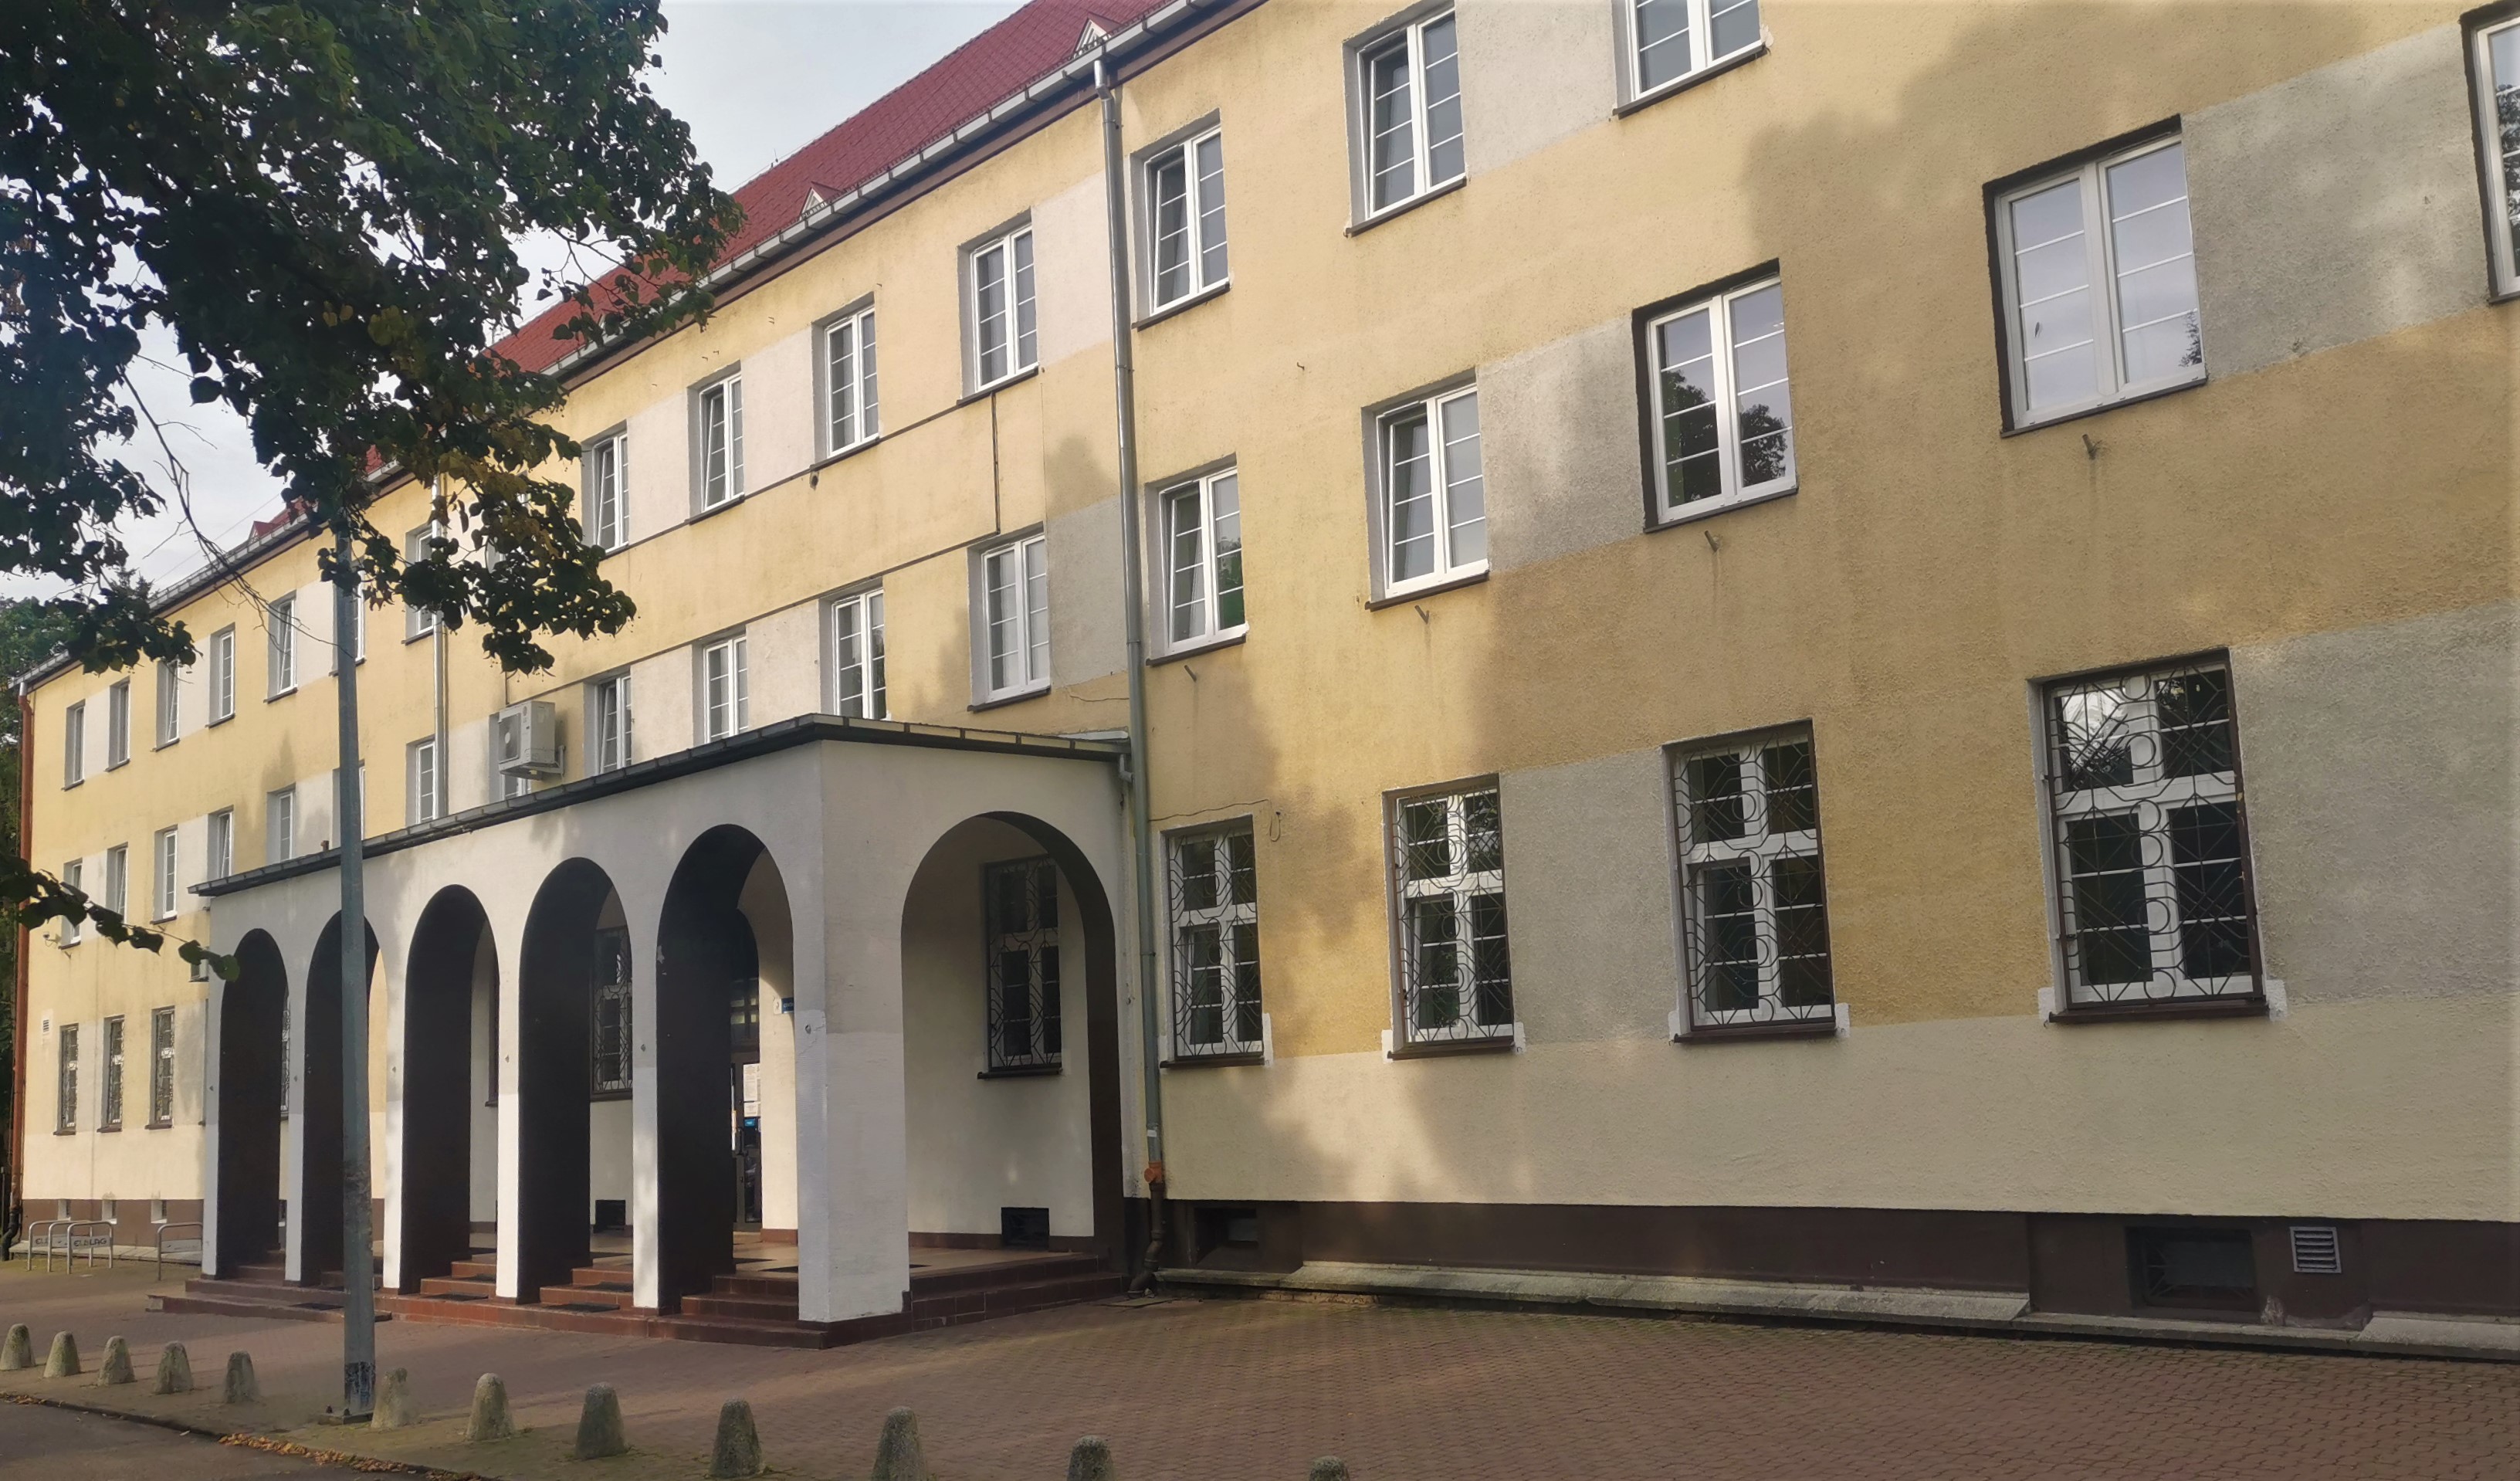 Fasada budynku, w którym znajduje się siedziba Urzędu Skarbowego w Elblągu.